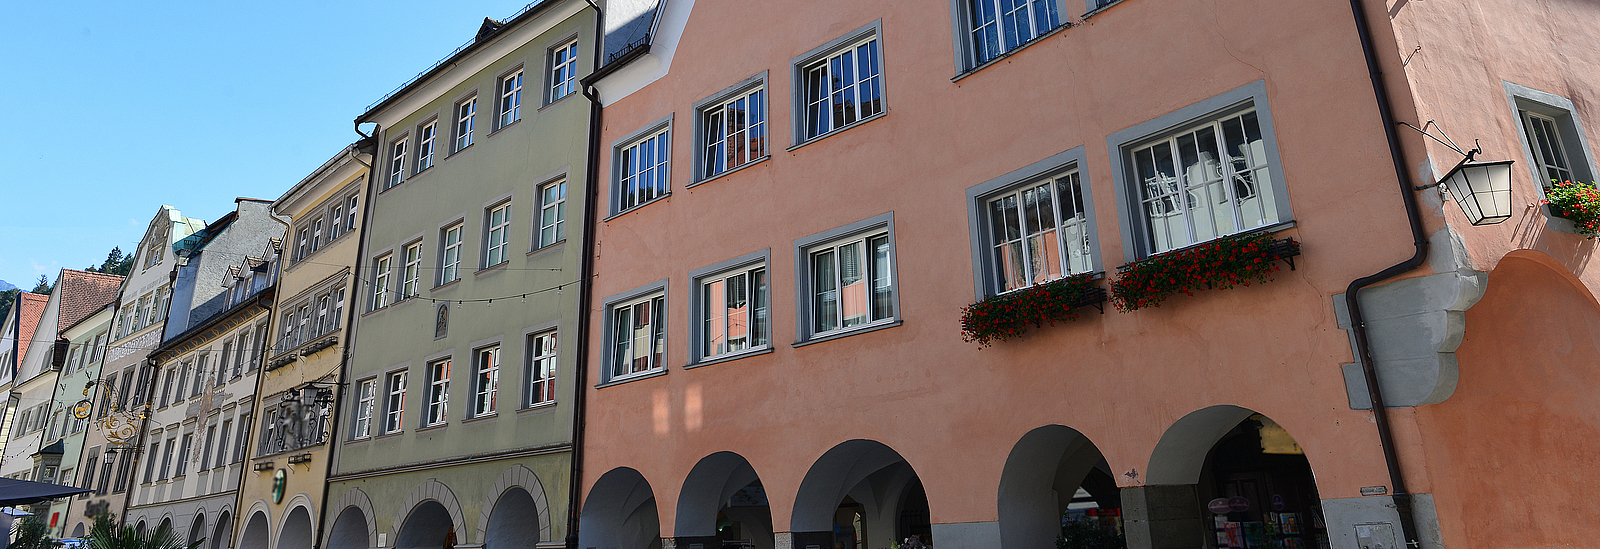 Denkmalgeschützte Gebäude in der Feldkircher Innenstadt